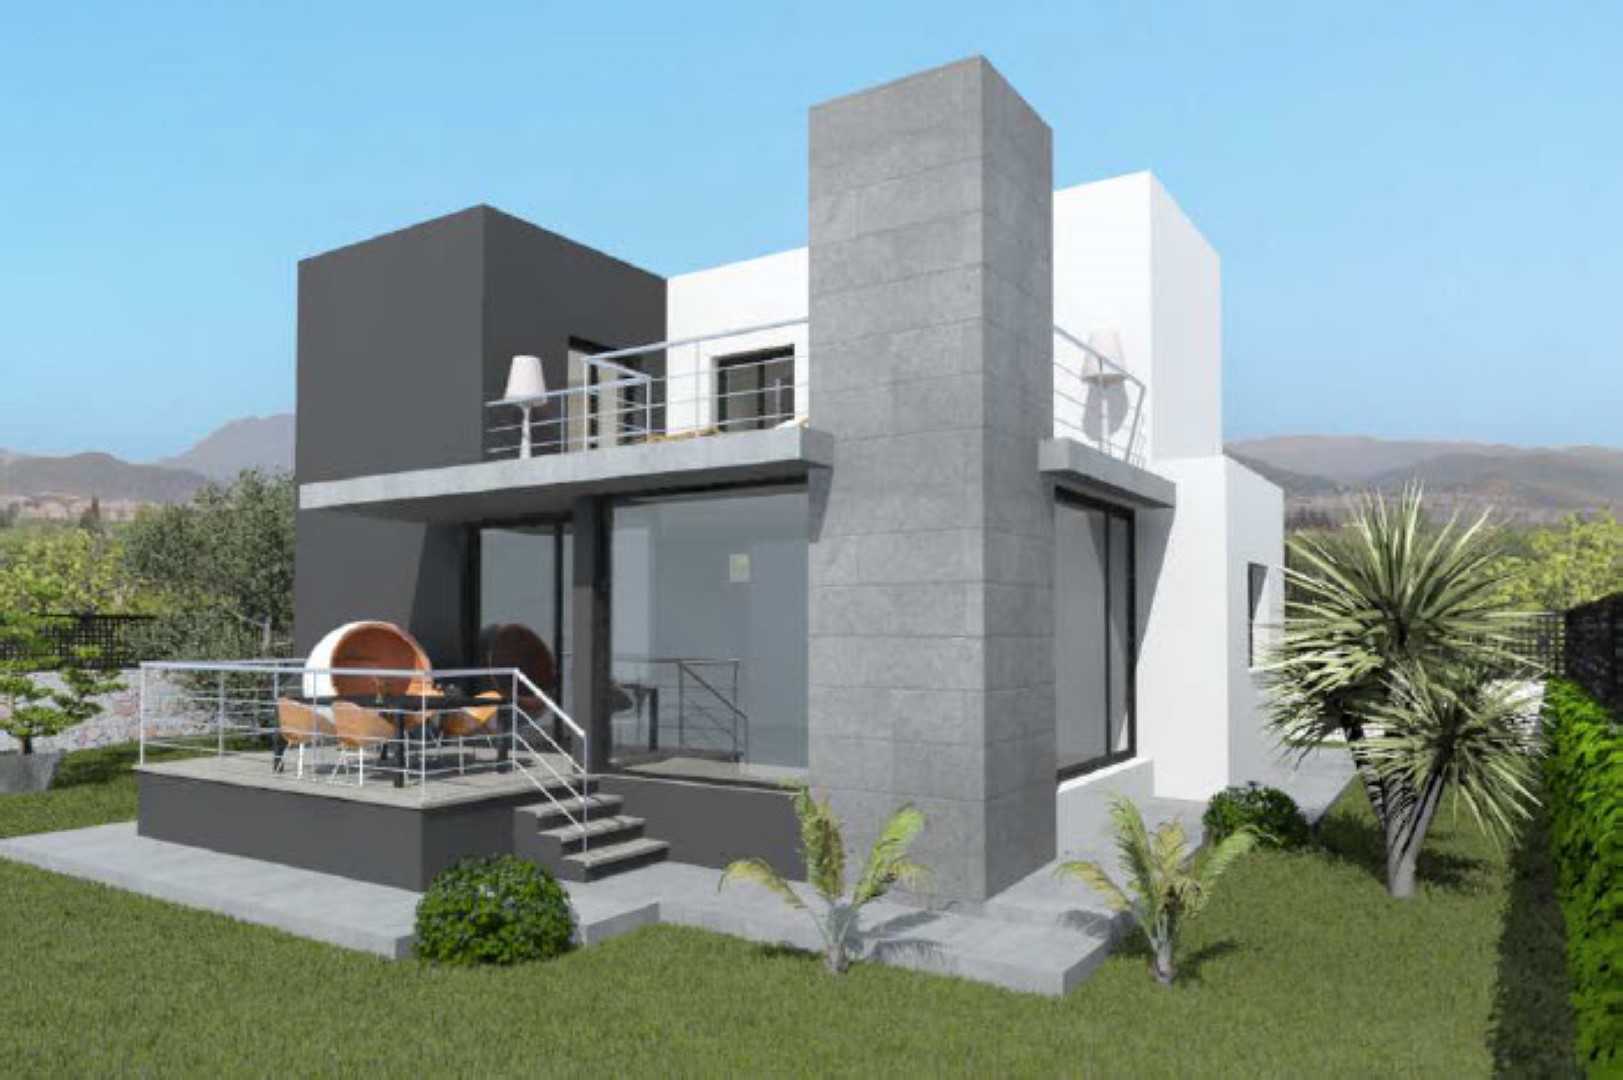 Villa de obra nueva en venta en La Sella, ubicada cerca del campo de golf. En la